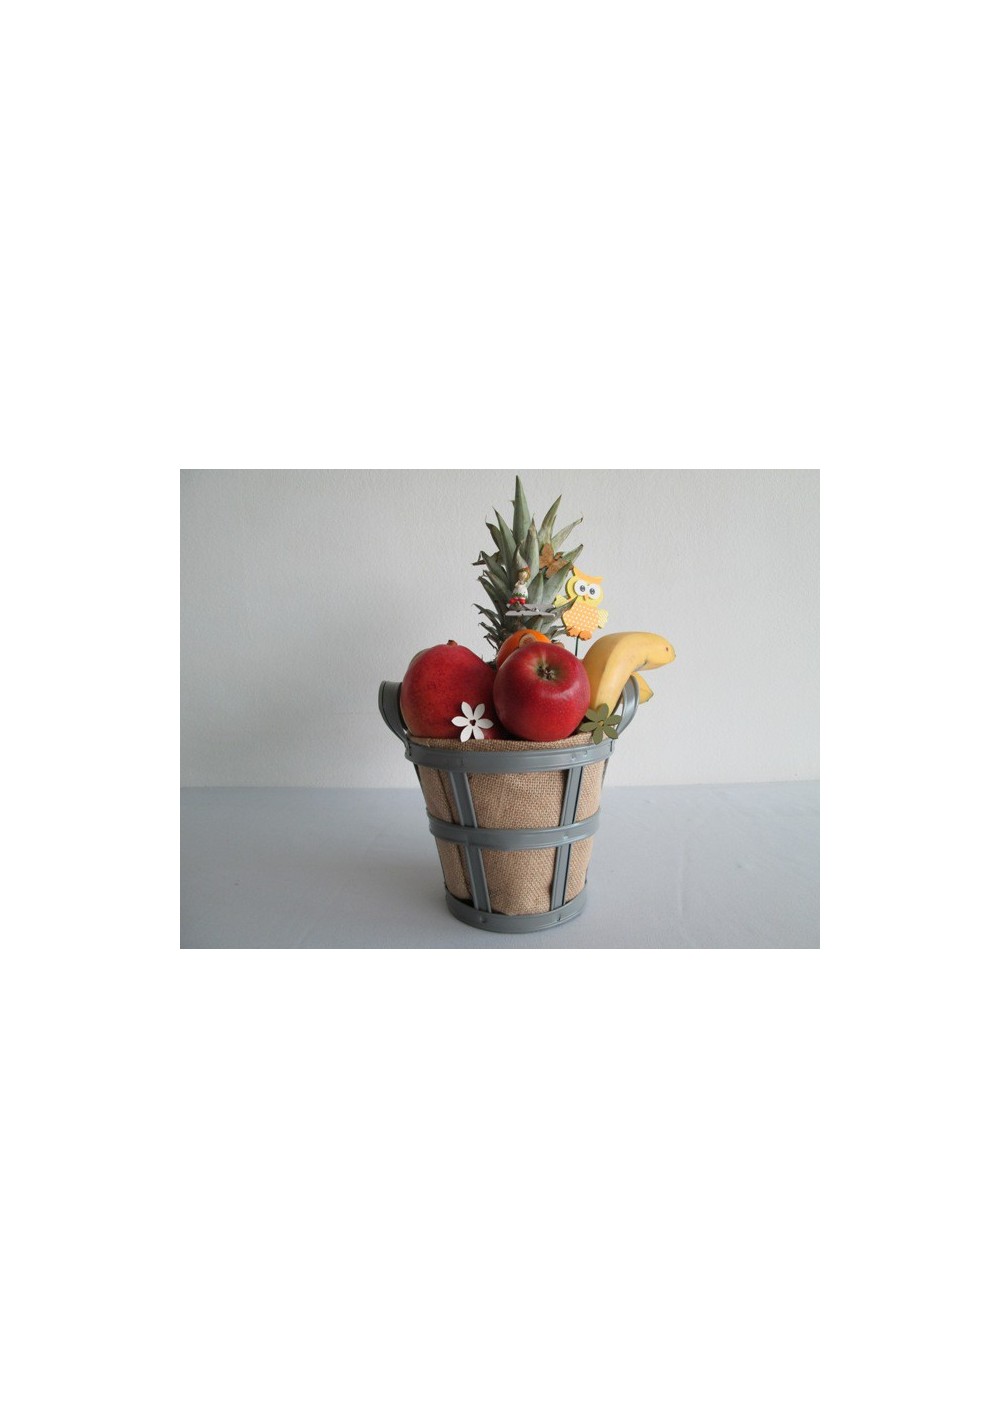 Fresh fruit basket